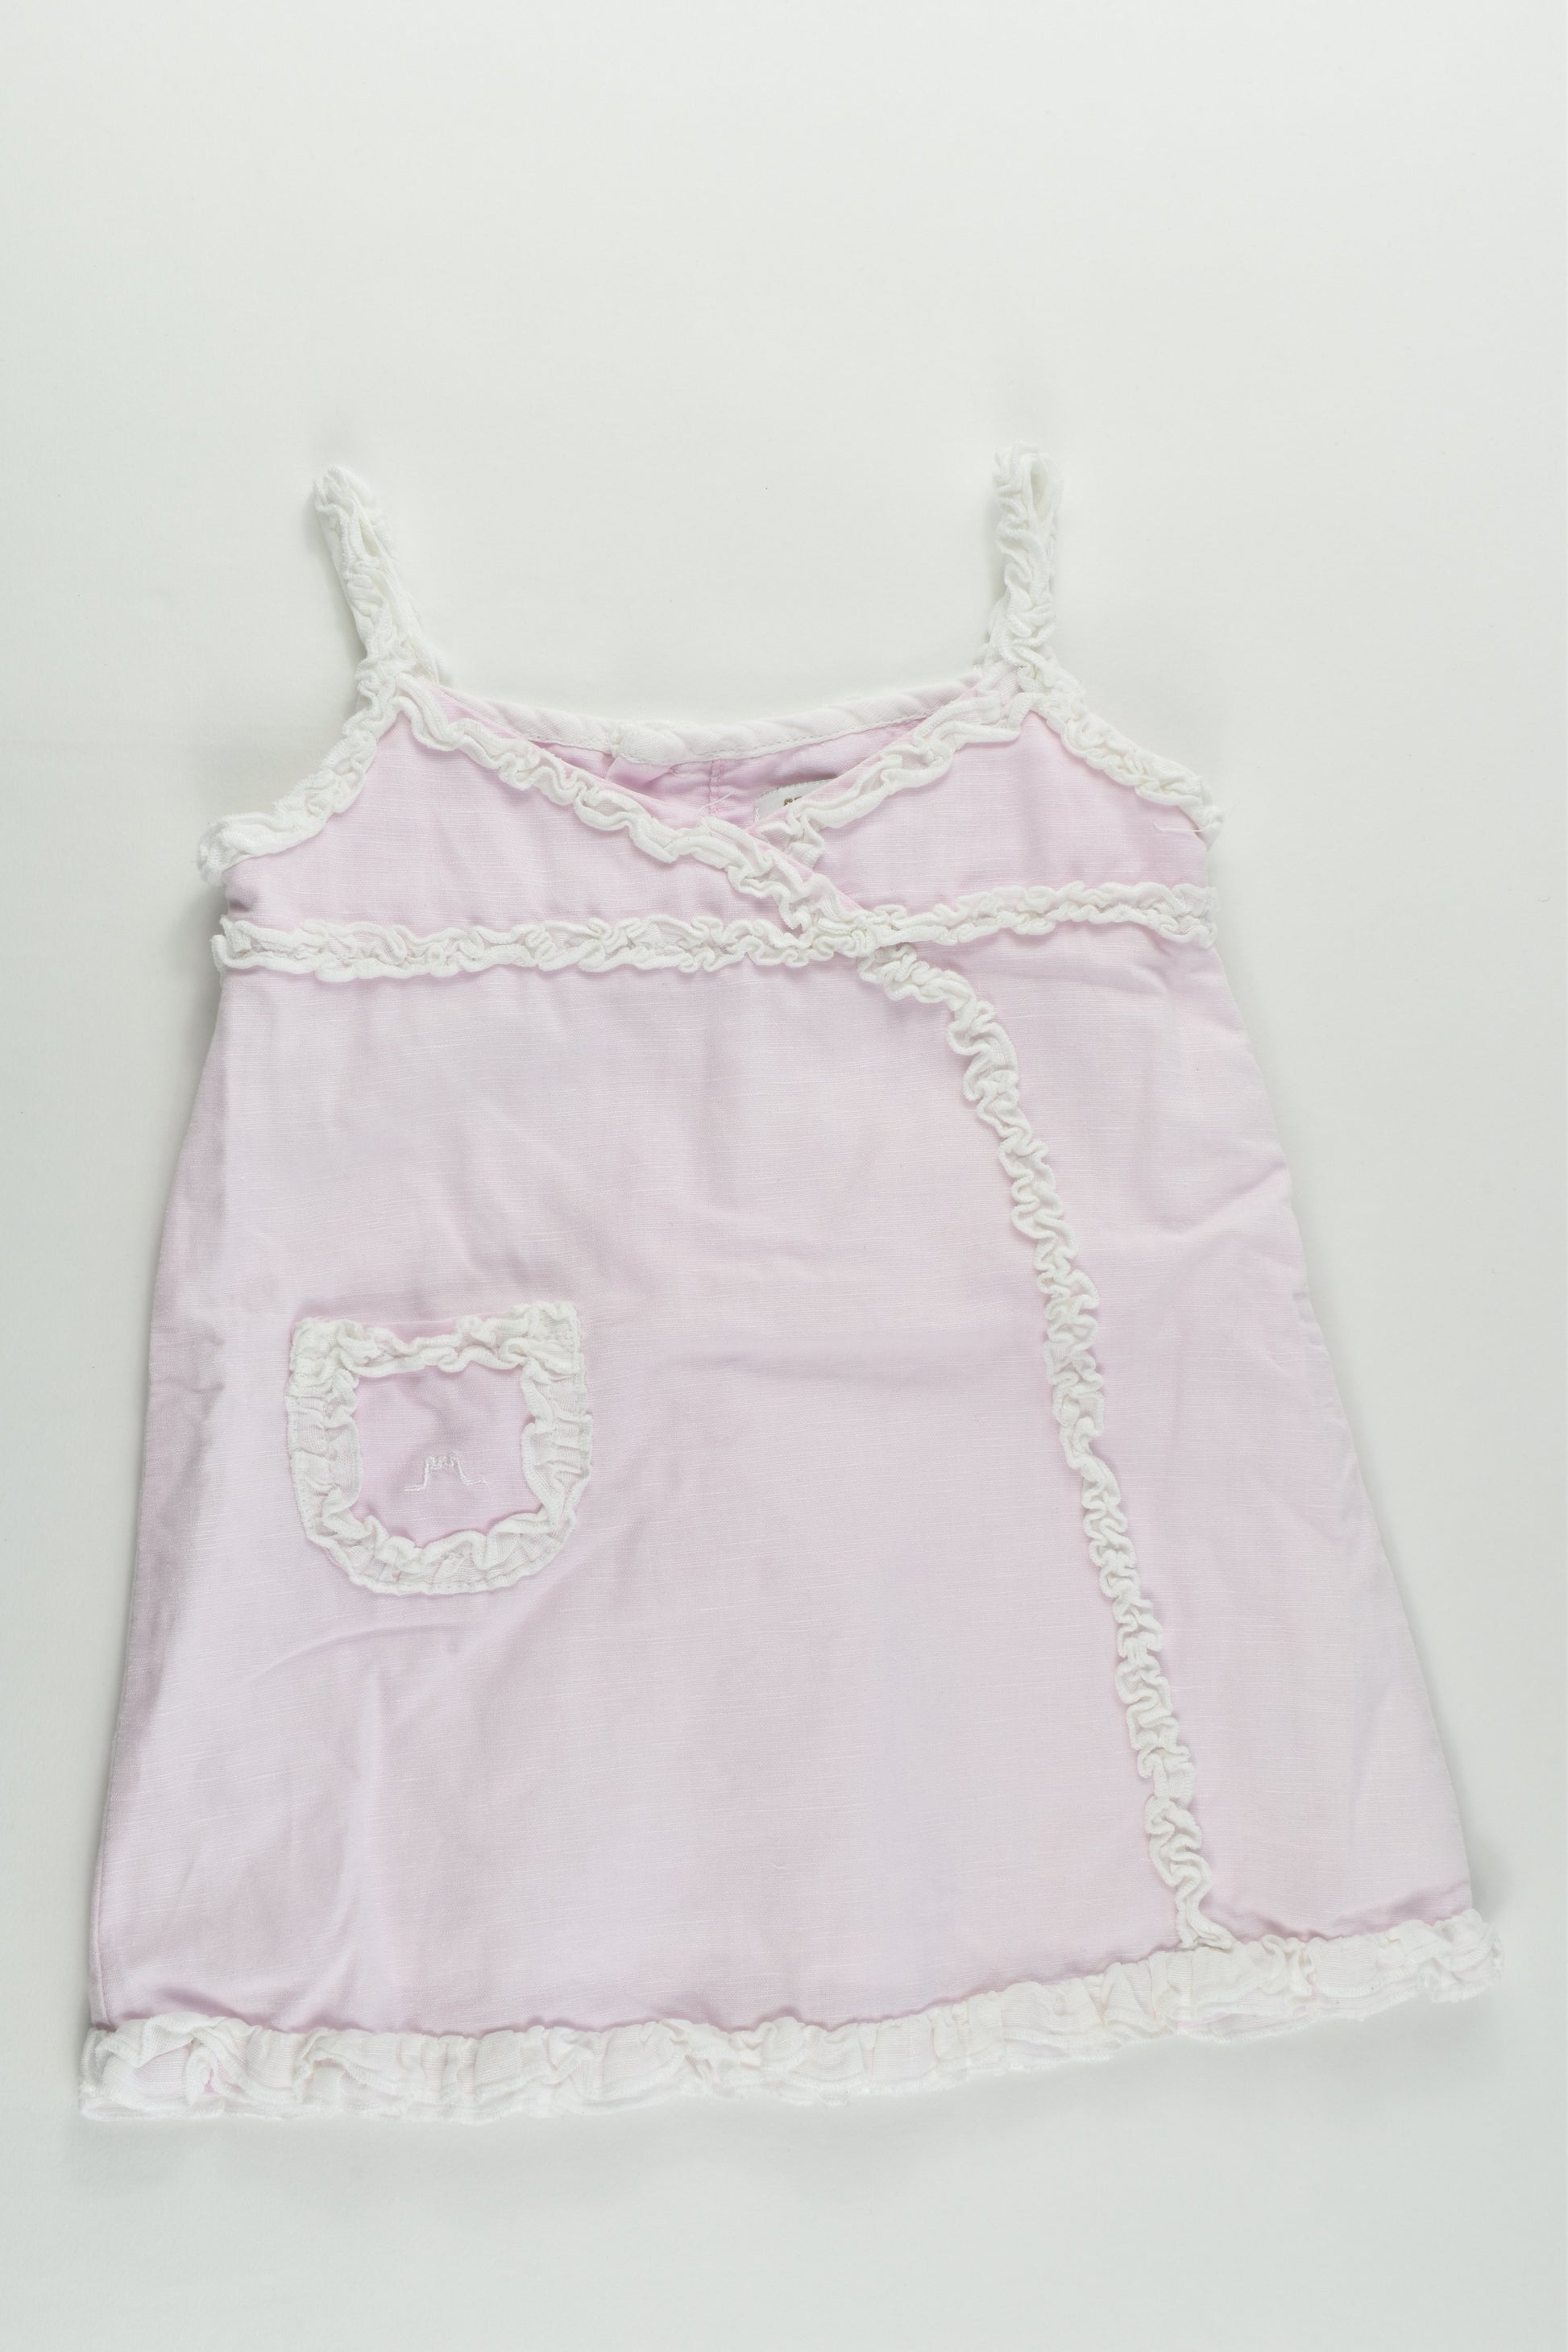 Château De Sable (France) Size 0-1 (12 months) Lined Linen/Cotton Dress